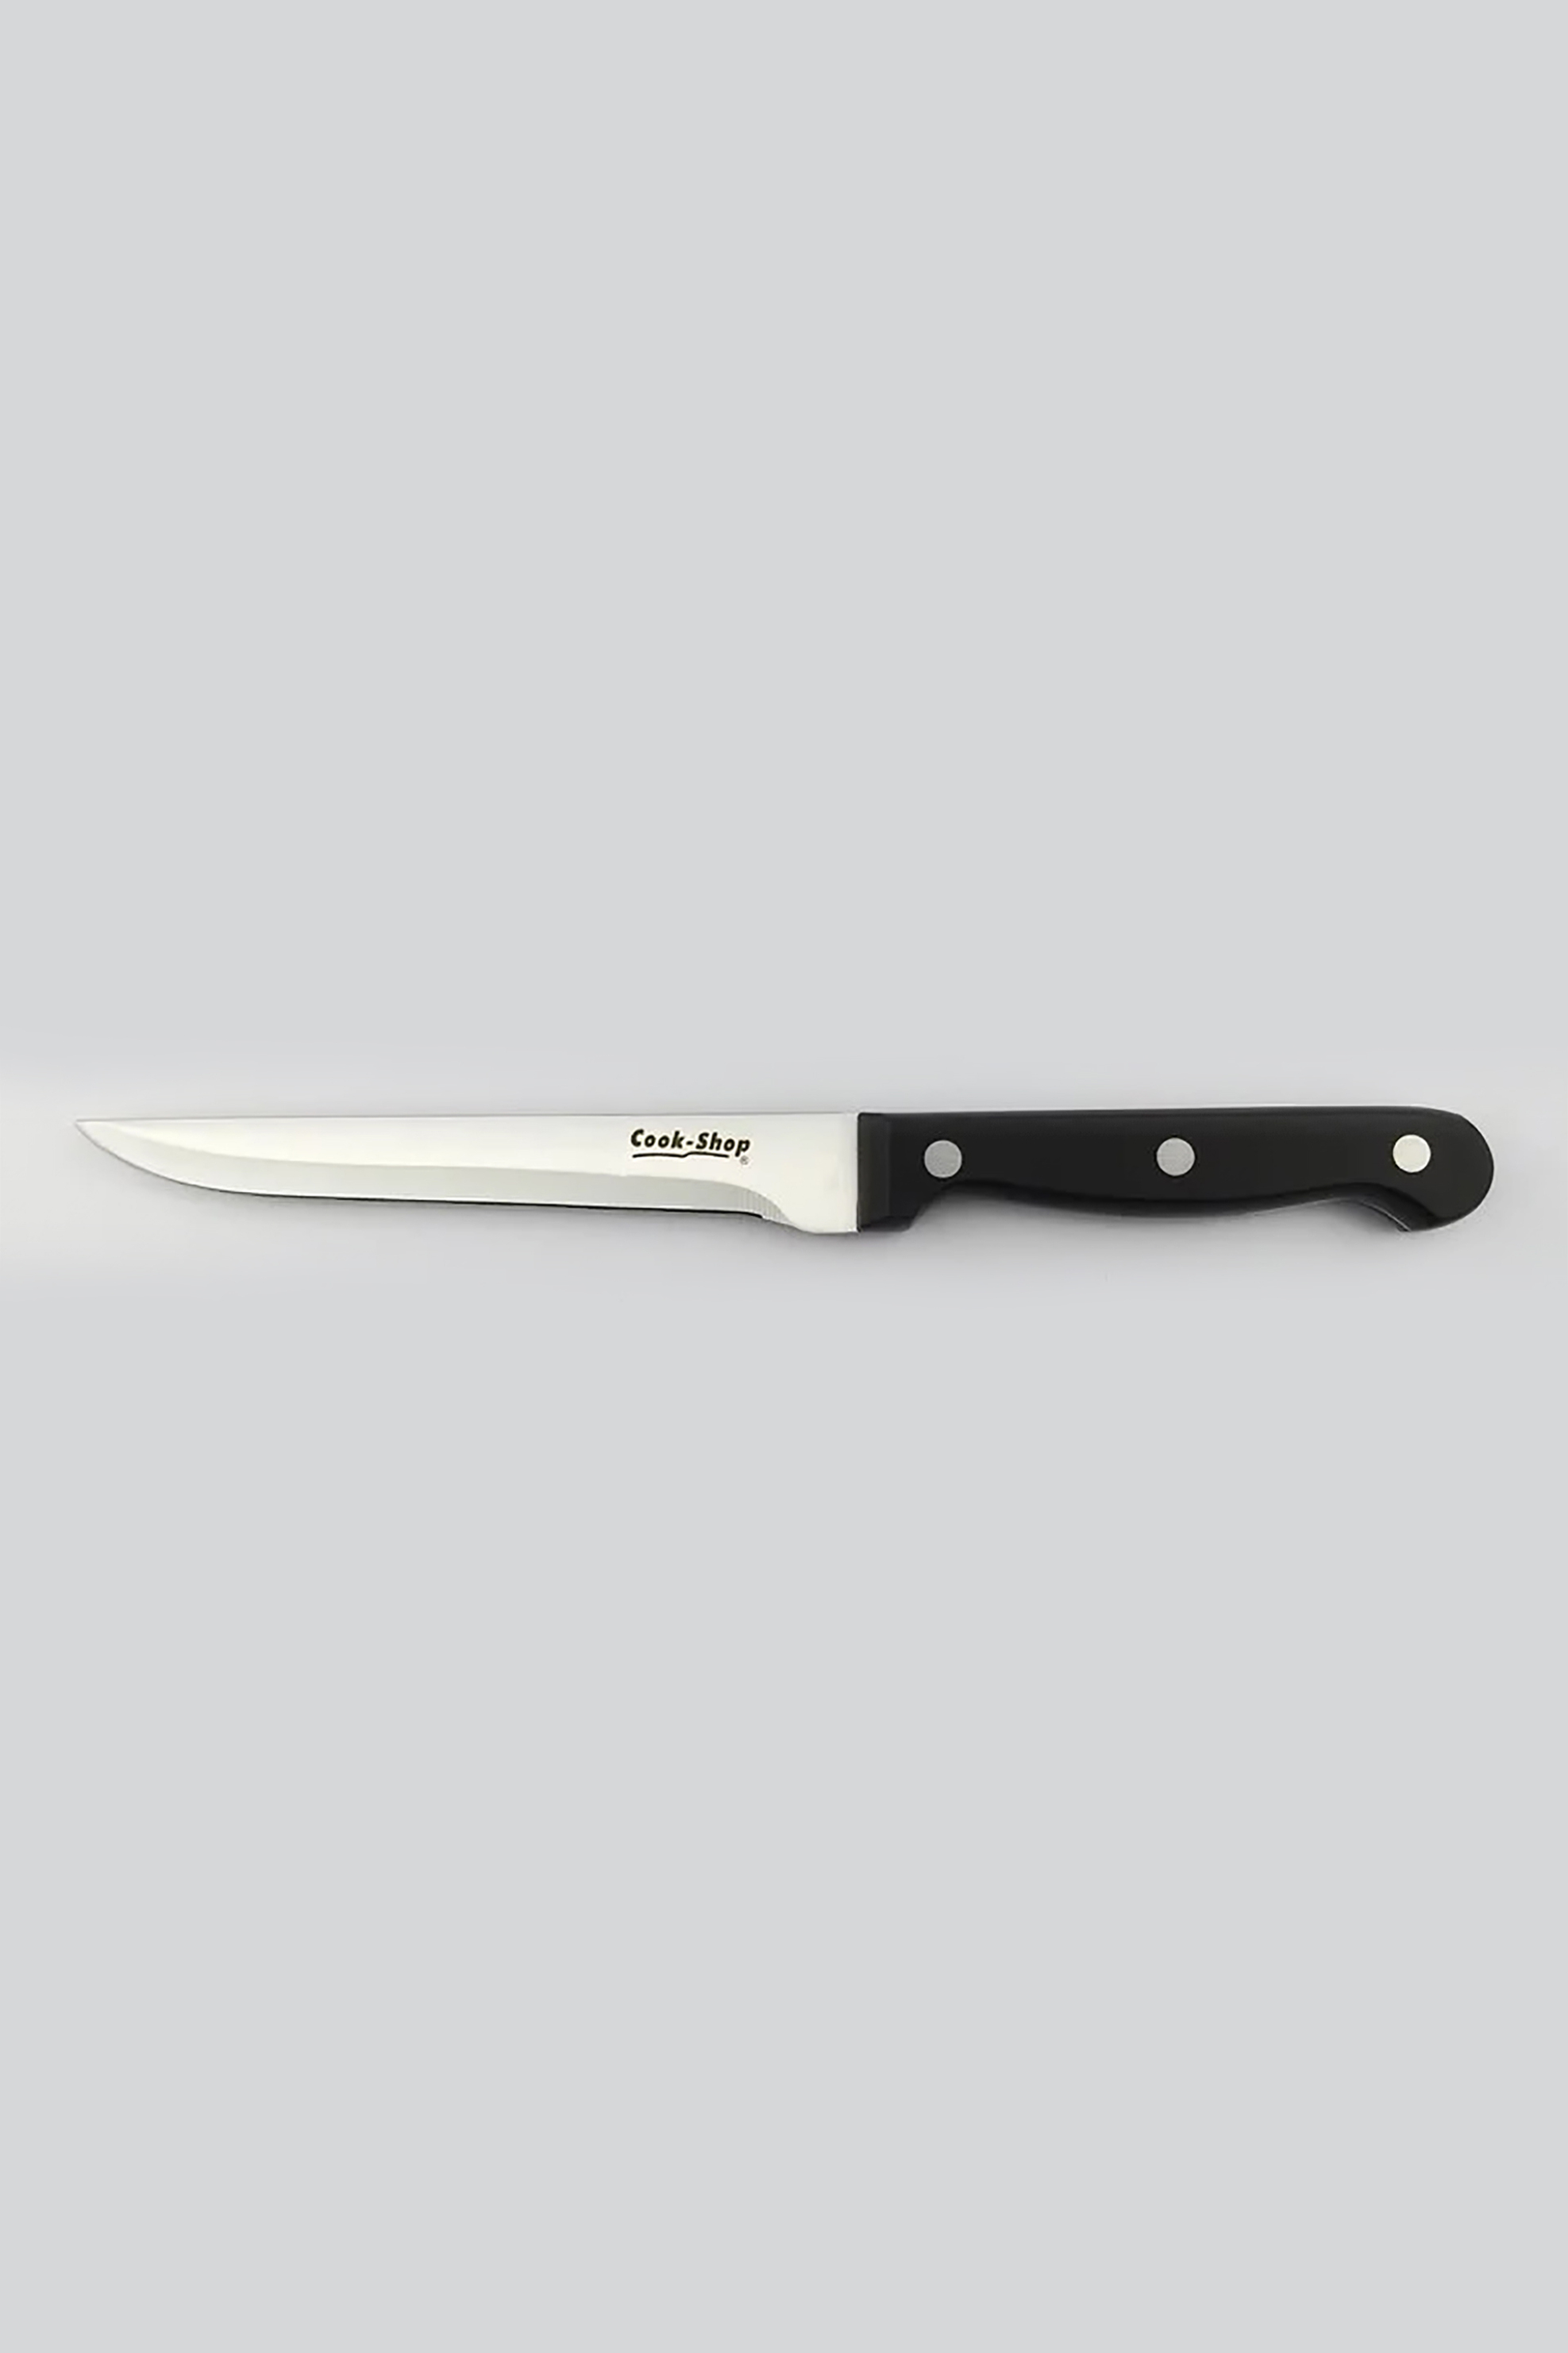 Home > ΚΟΥΖΙΝΑ > Αξεσουάρ Kουζίνας > Μαχαίρια & Καθαριστές Cook-Shop μαχαίρι ξεκοκαλίσματος με ανοξείδωτη λεπίδα 15 cm - SB-001P/CP6.1